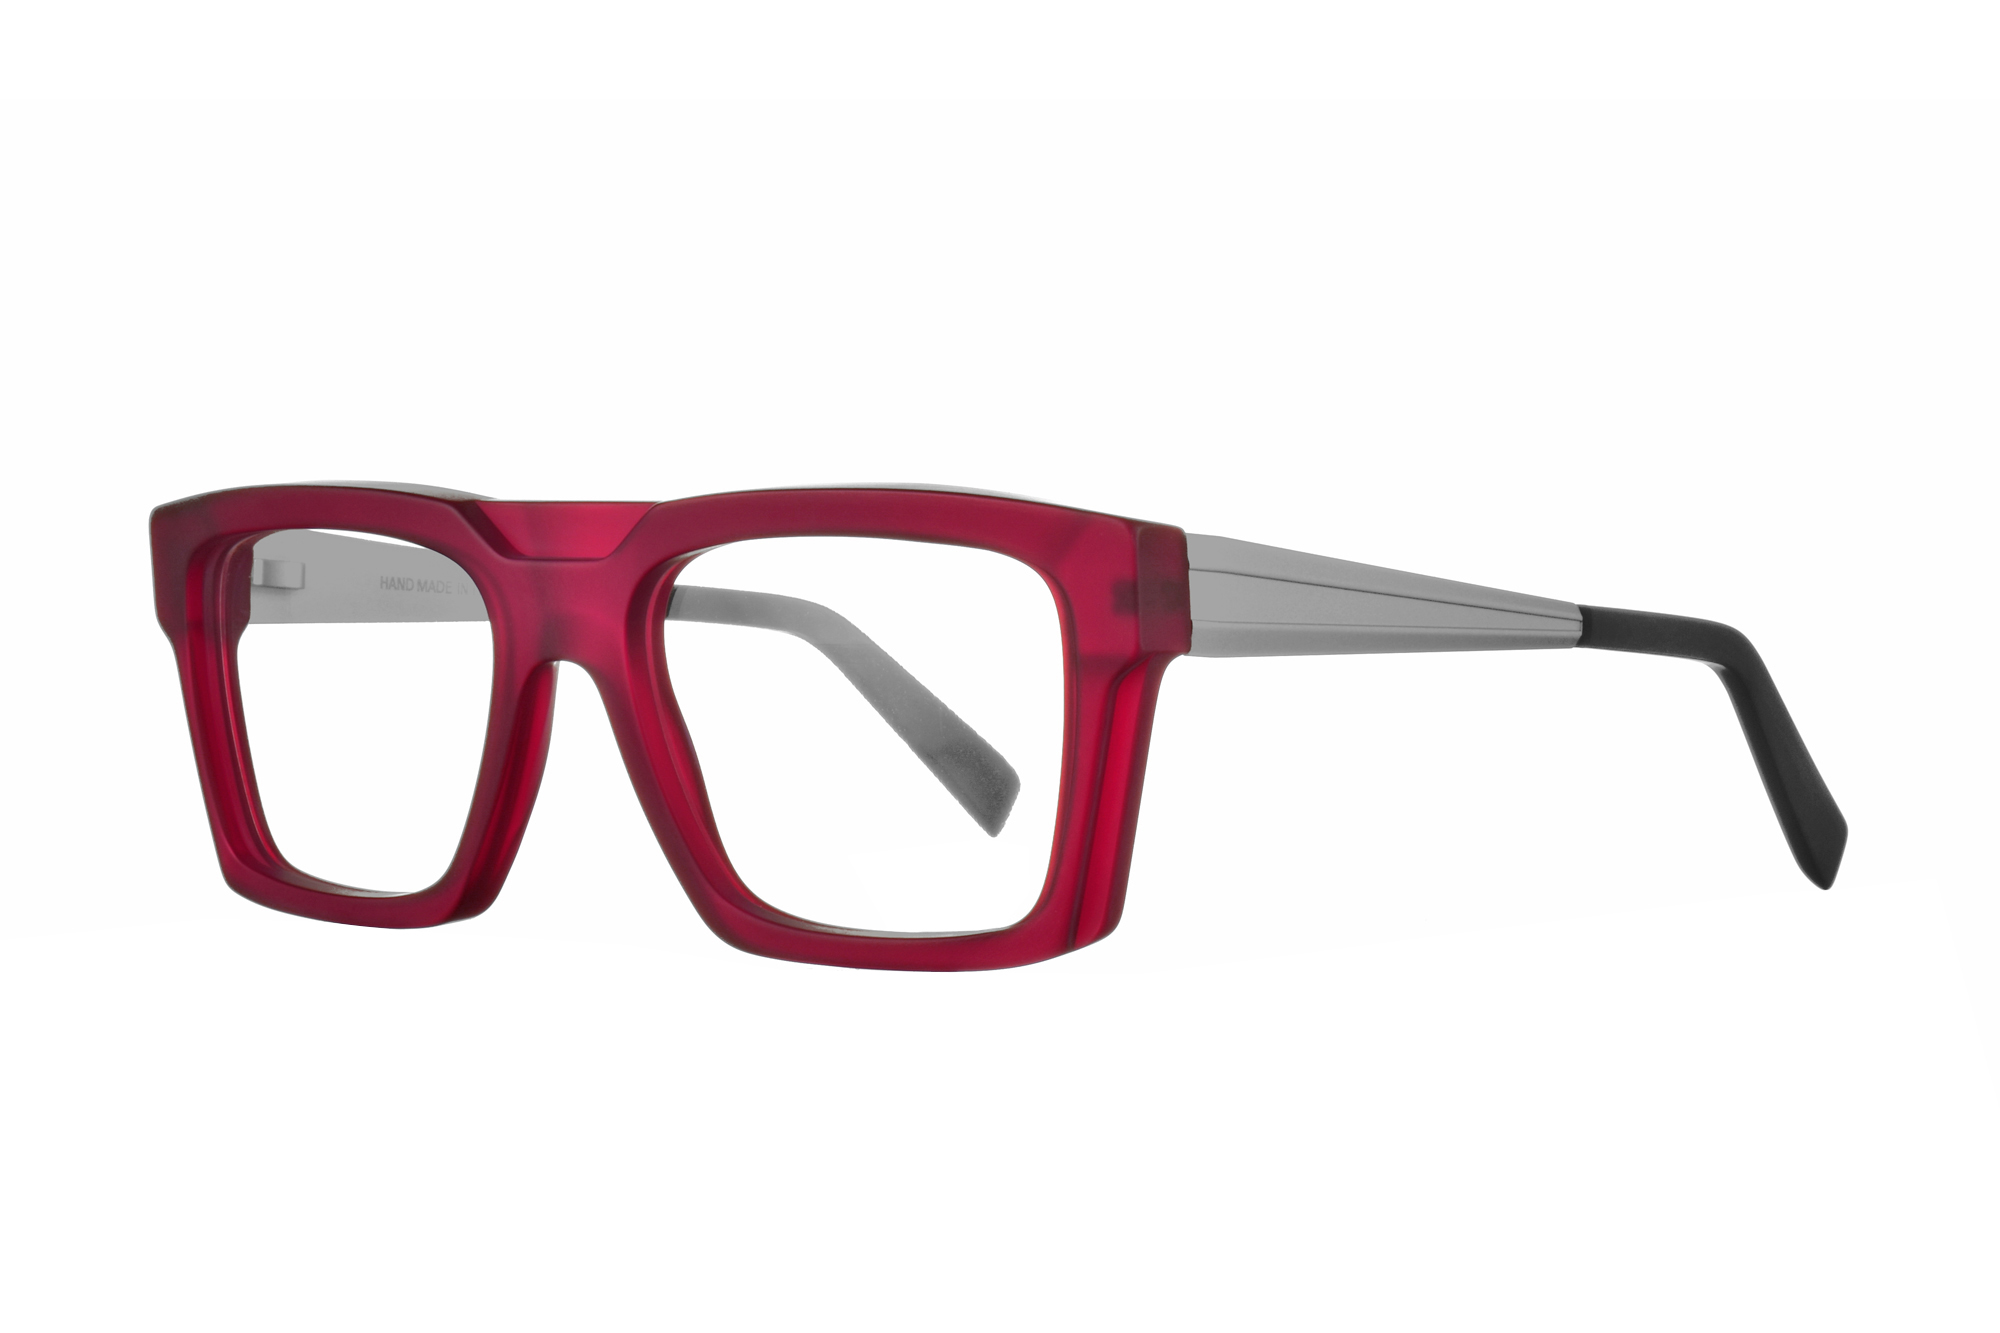 Extra Glasses - na forum - modry konik - skusenosti - recenzie